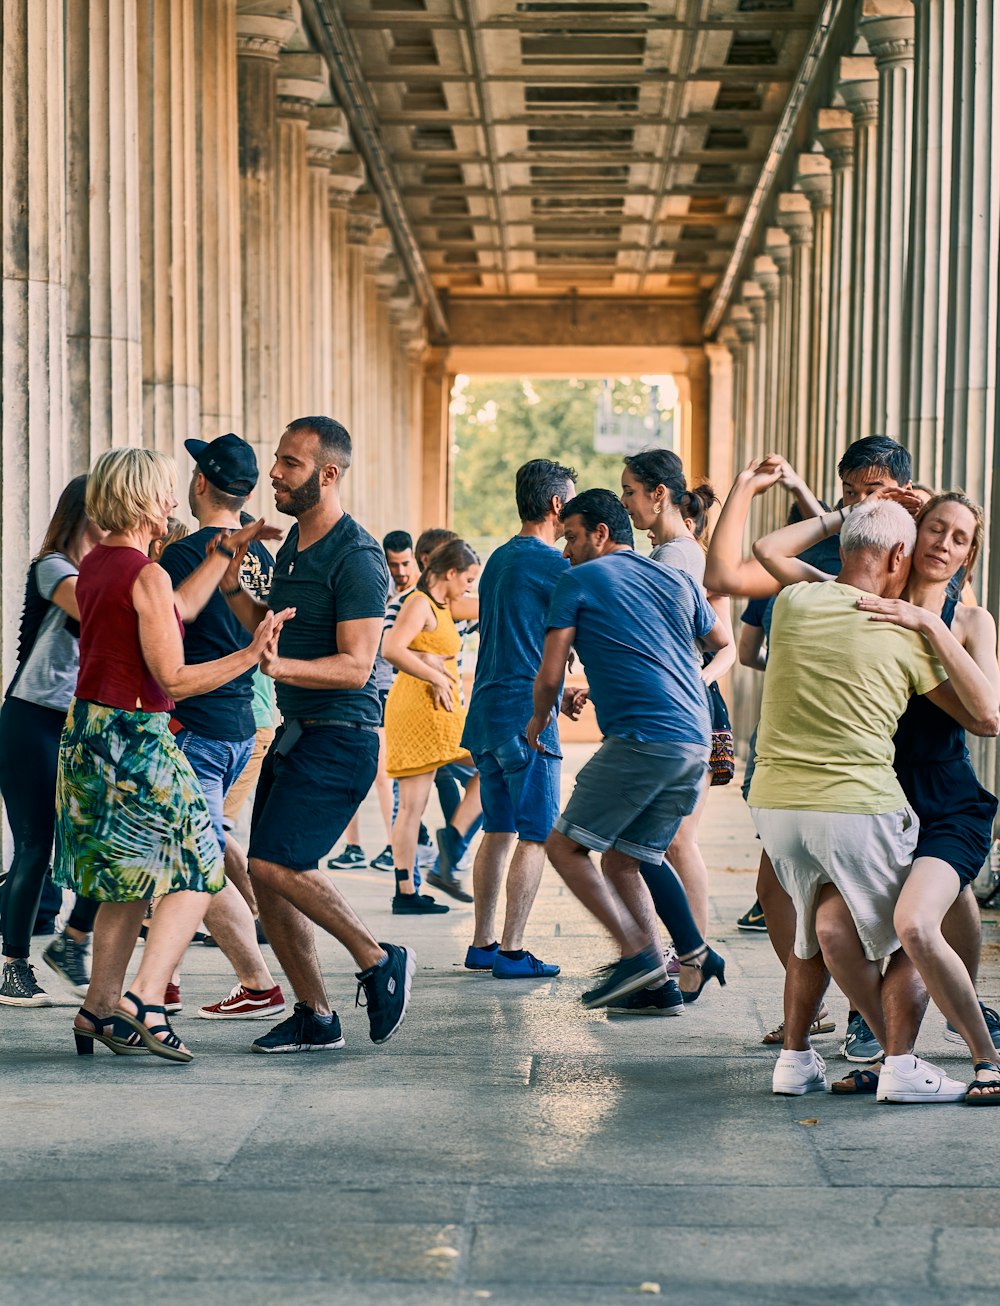 Un grupo de personas bailando